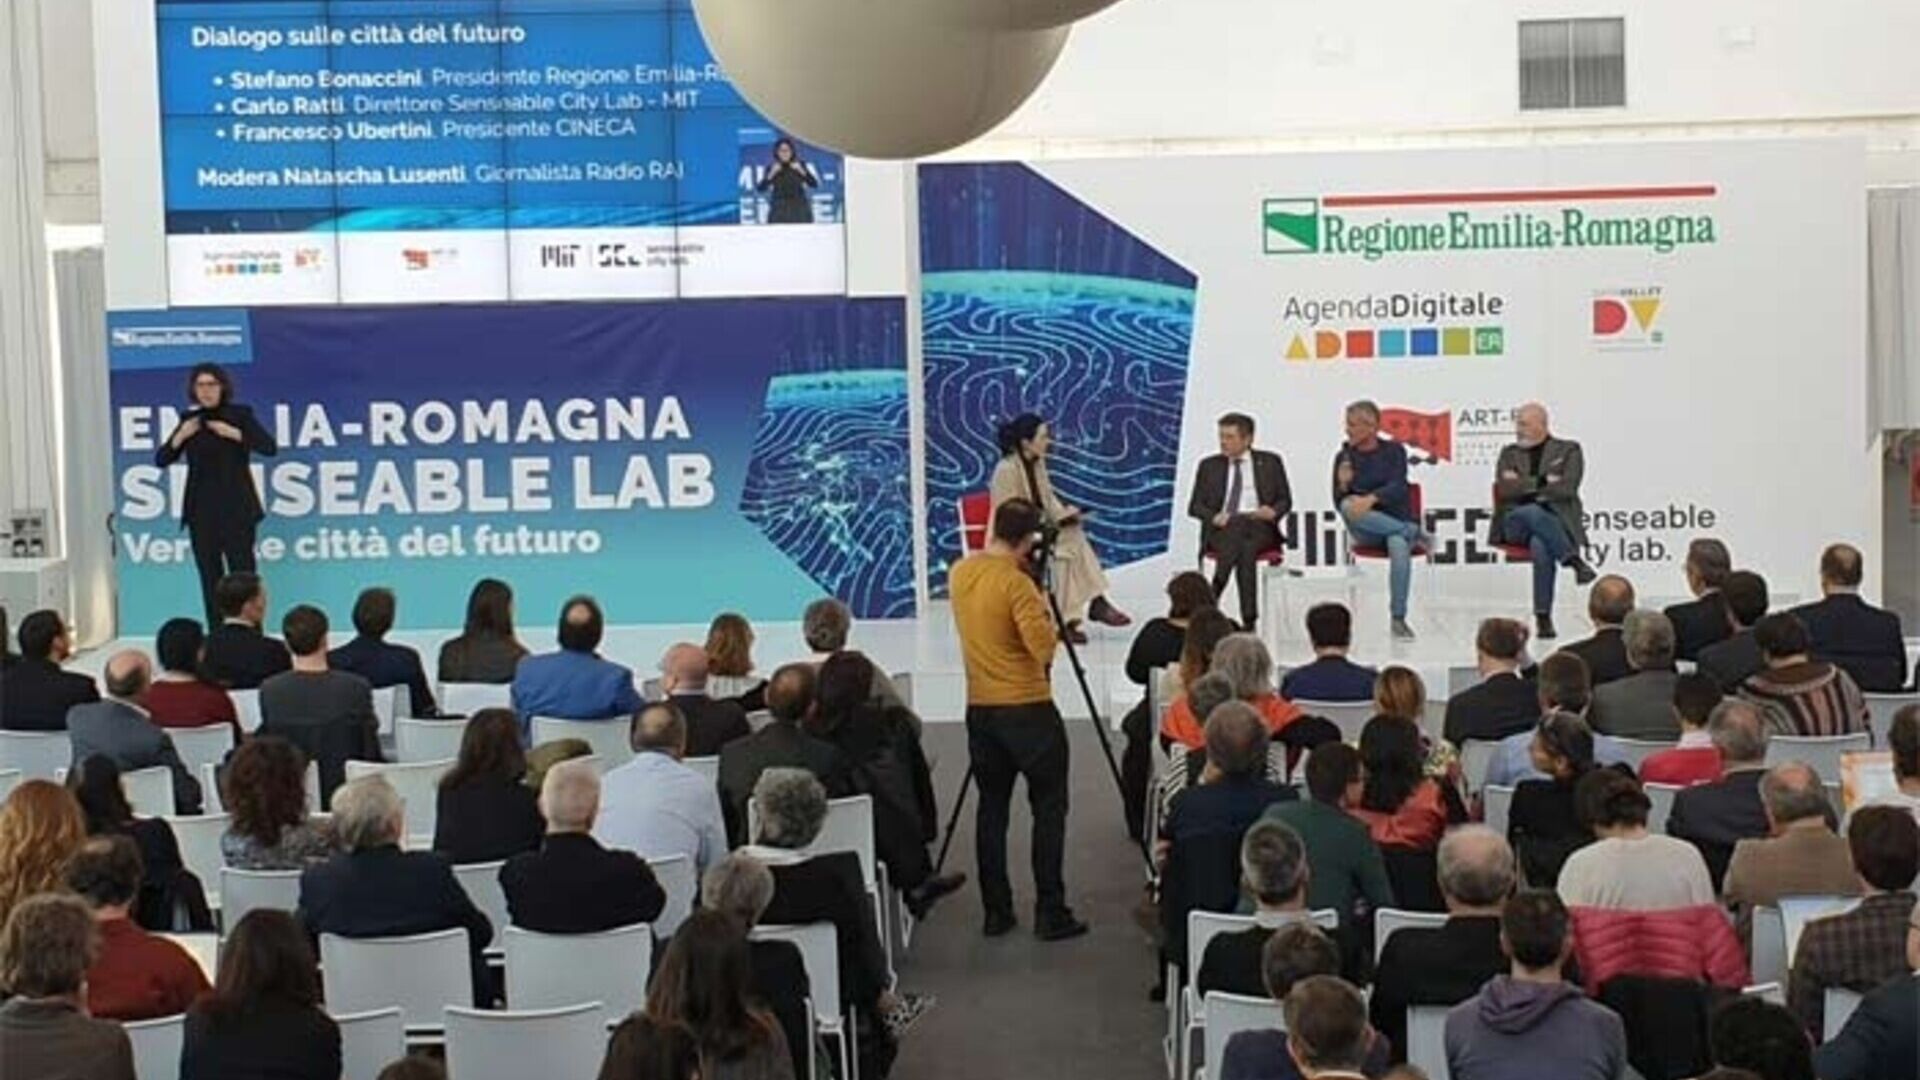 Massachusetts Institute of Technology: MIT Senseable City Lab saapuu Bologna Tecnopoloon kuvittelemaan tulevaisuuden kaupunkeja yhteistyön ansiosta Emilia-Romagnan alueen kanssa